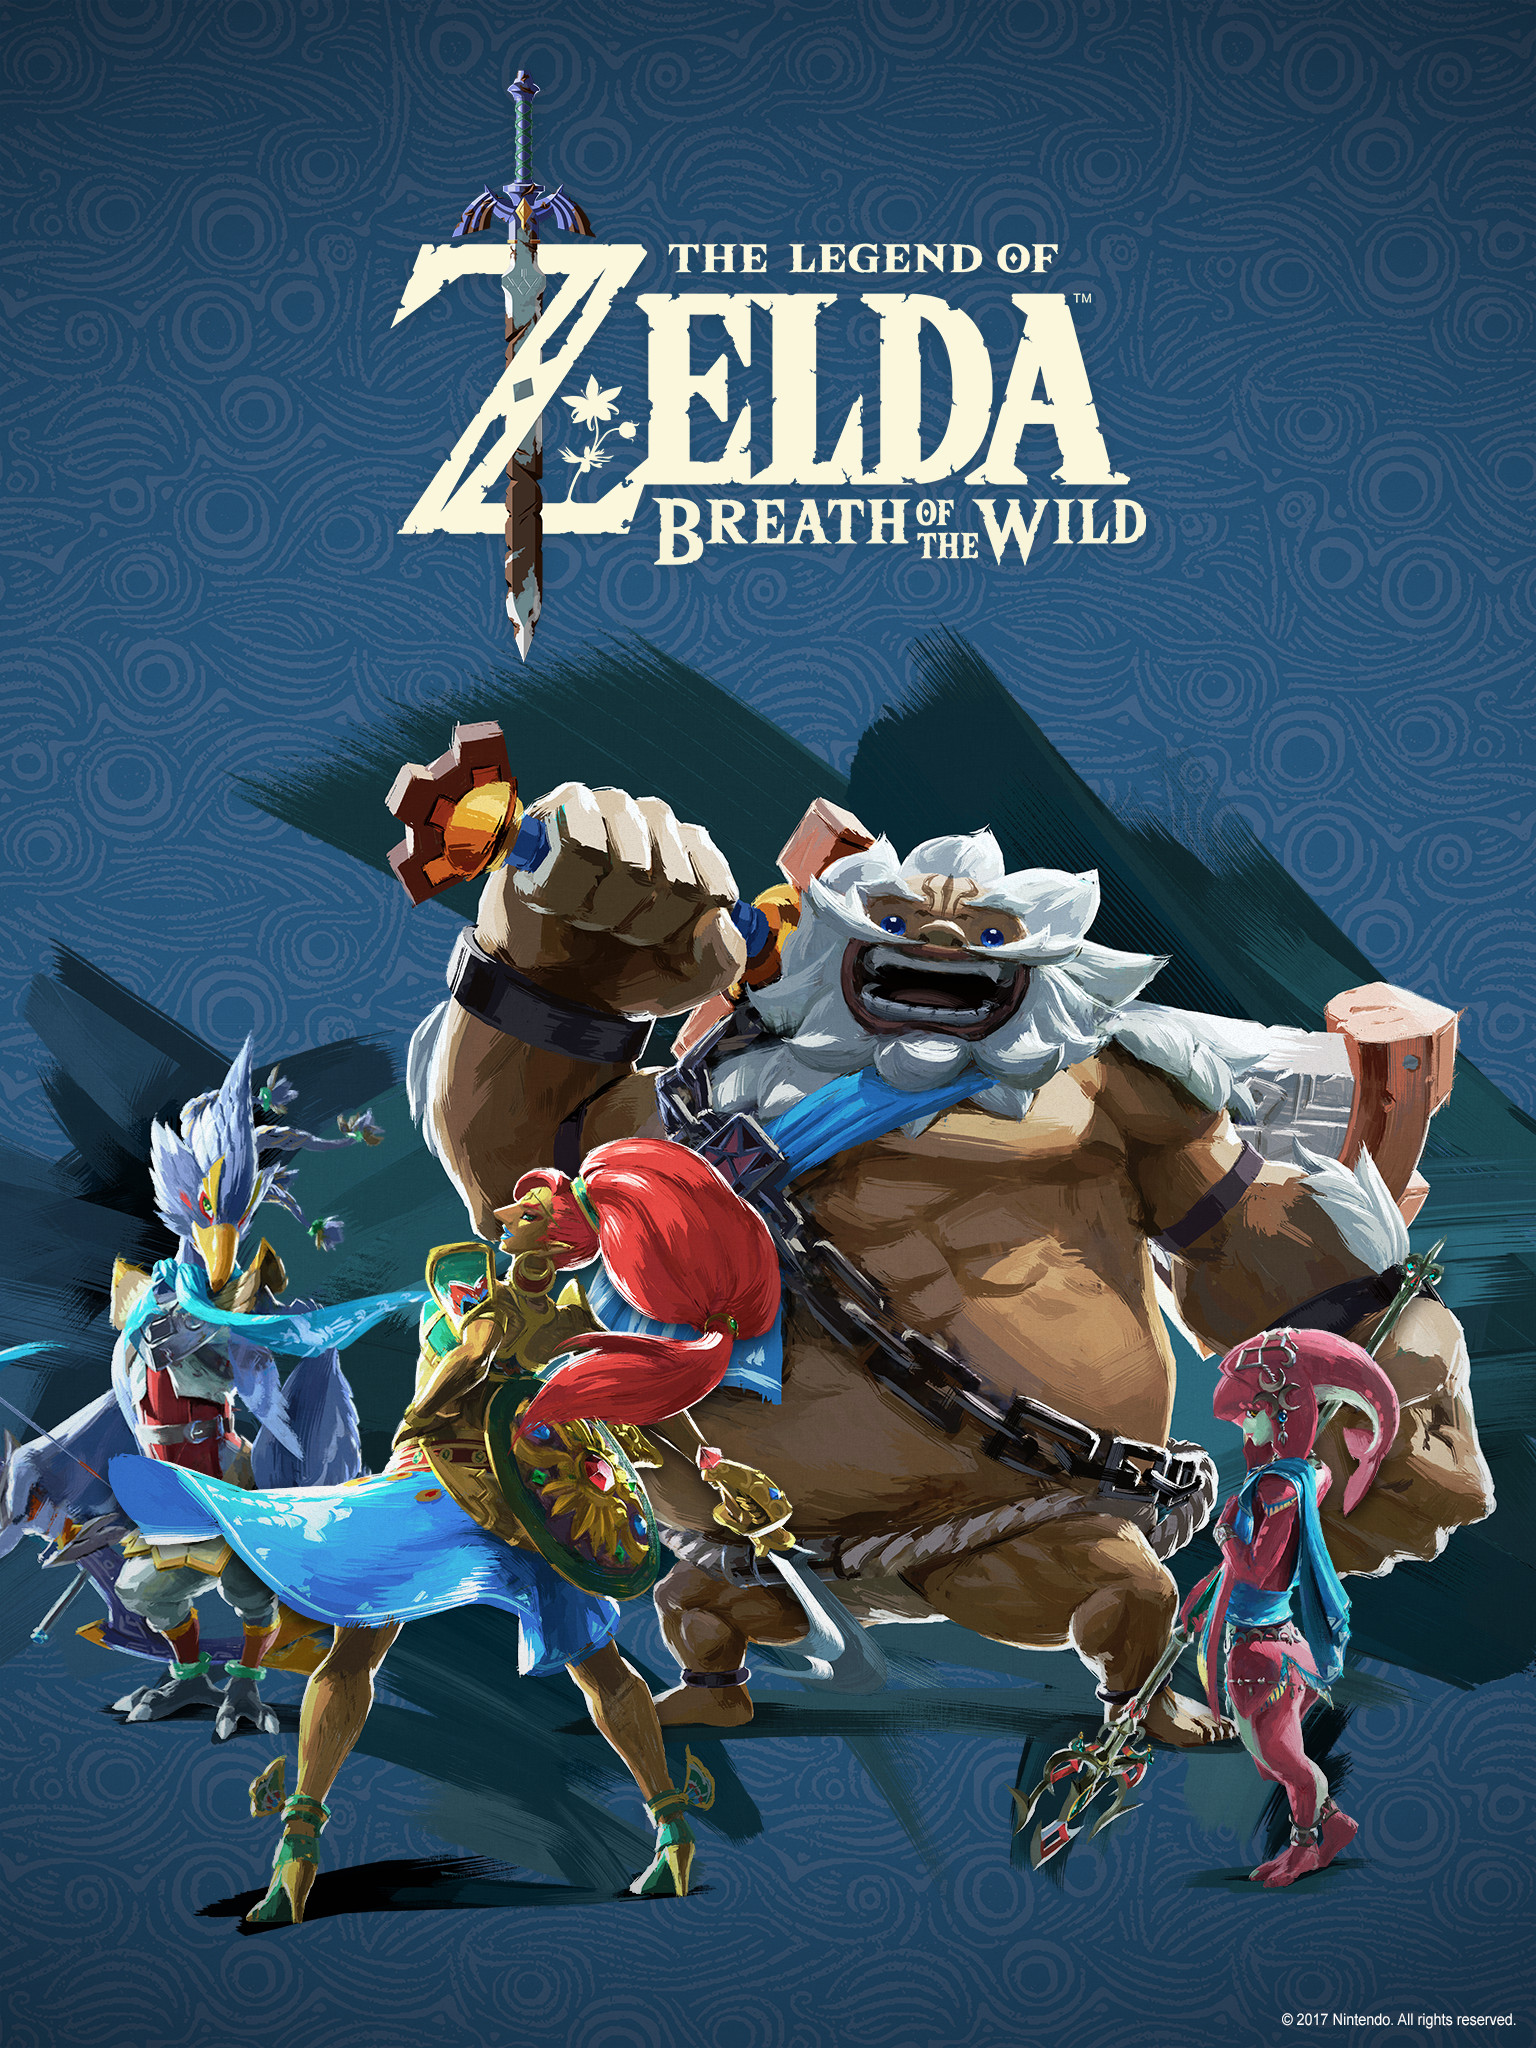 The Legend of Zelda™: Breath